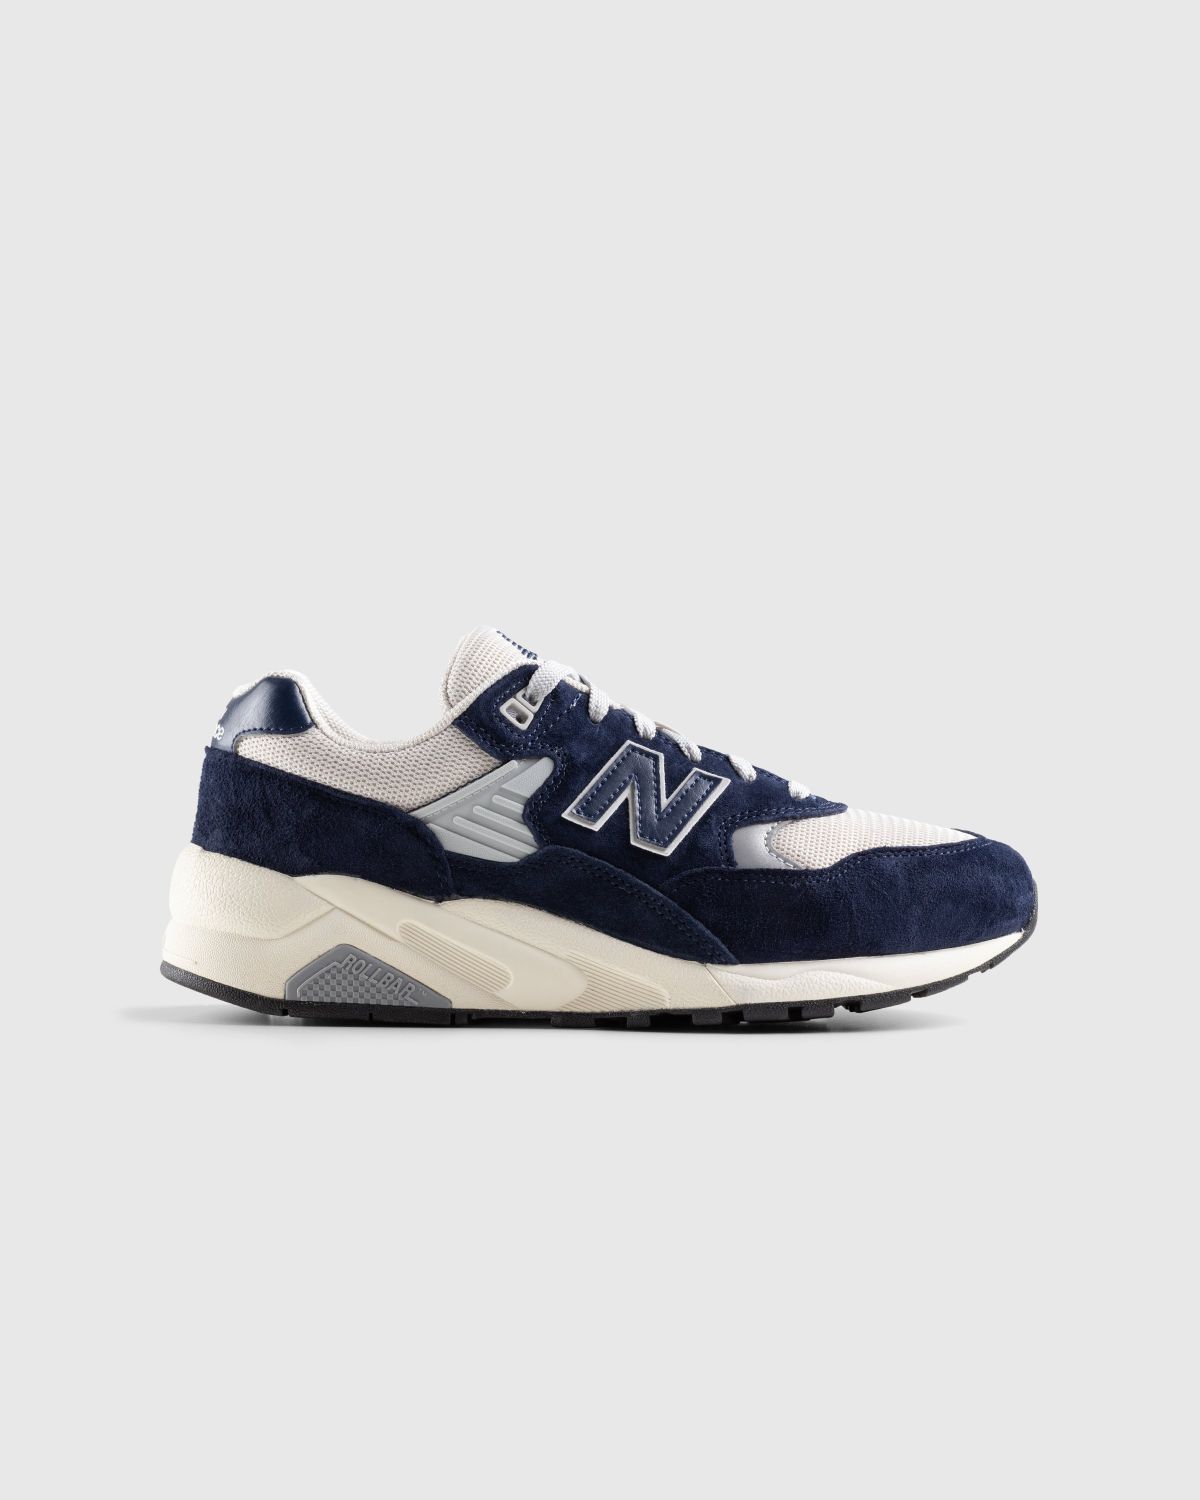 New Balance – MT580OG2 Natural Indigo - Sneakers - Blue - Image 1